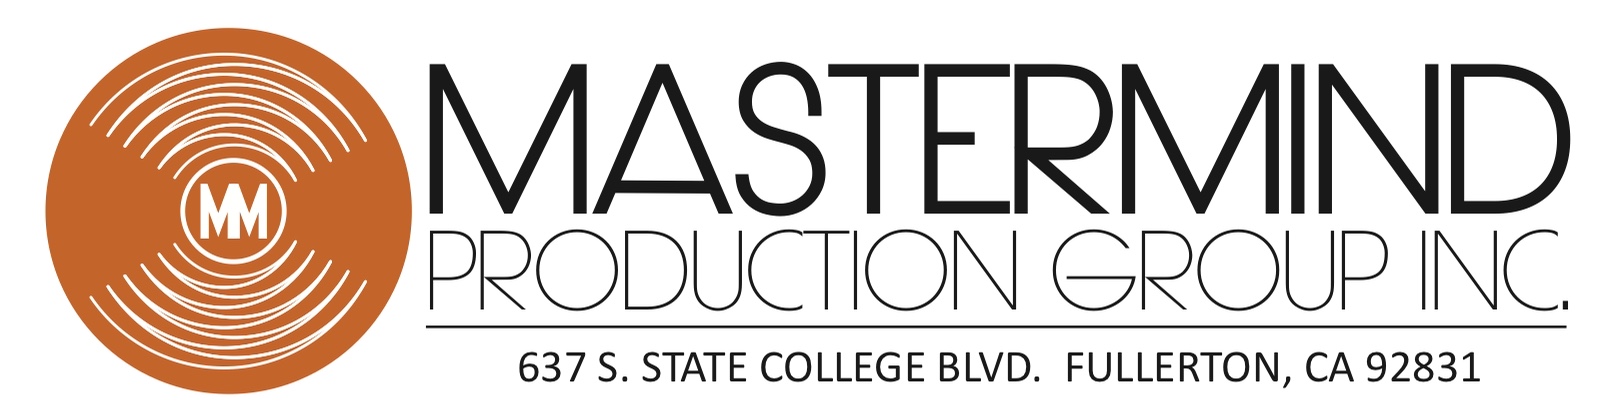 Mastermind Production Group Inc.